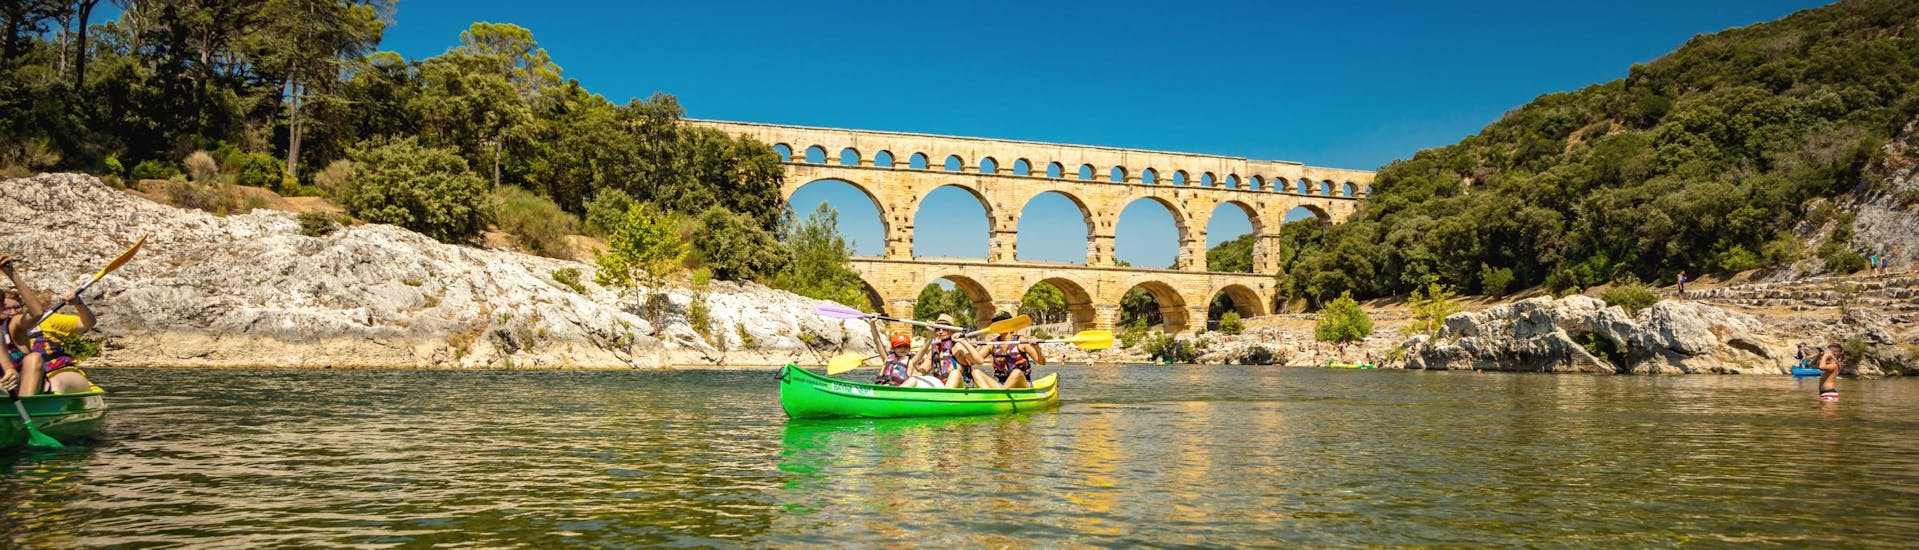 Grâce à Kayak Vert, une famille passe une bonne journée à pagayer sur le Gardon avec le pont du Gard en arrière-plan, une des destinations prisées pour le canoë en France.